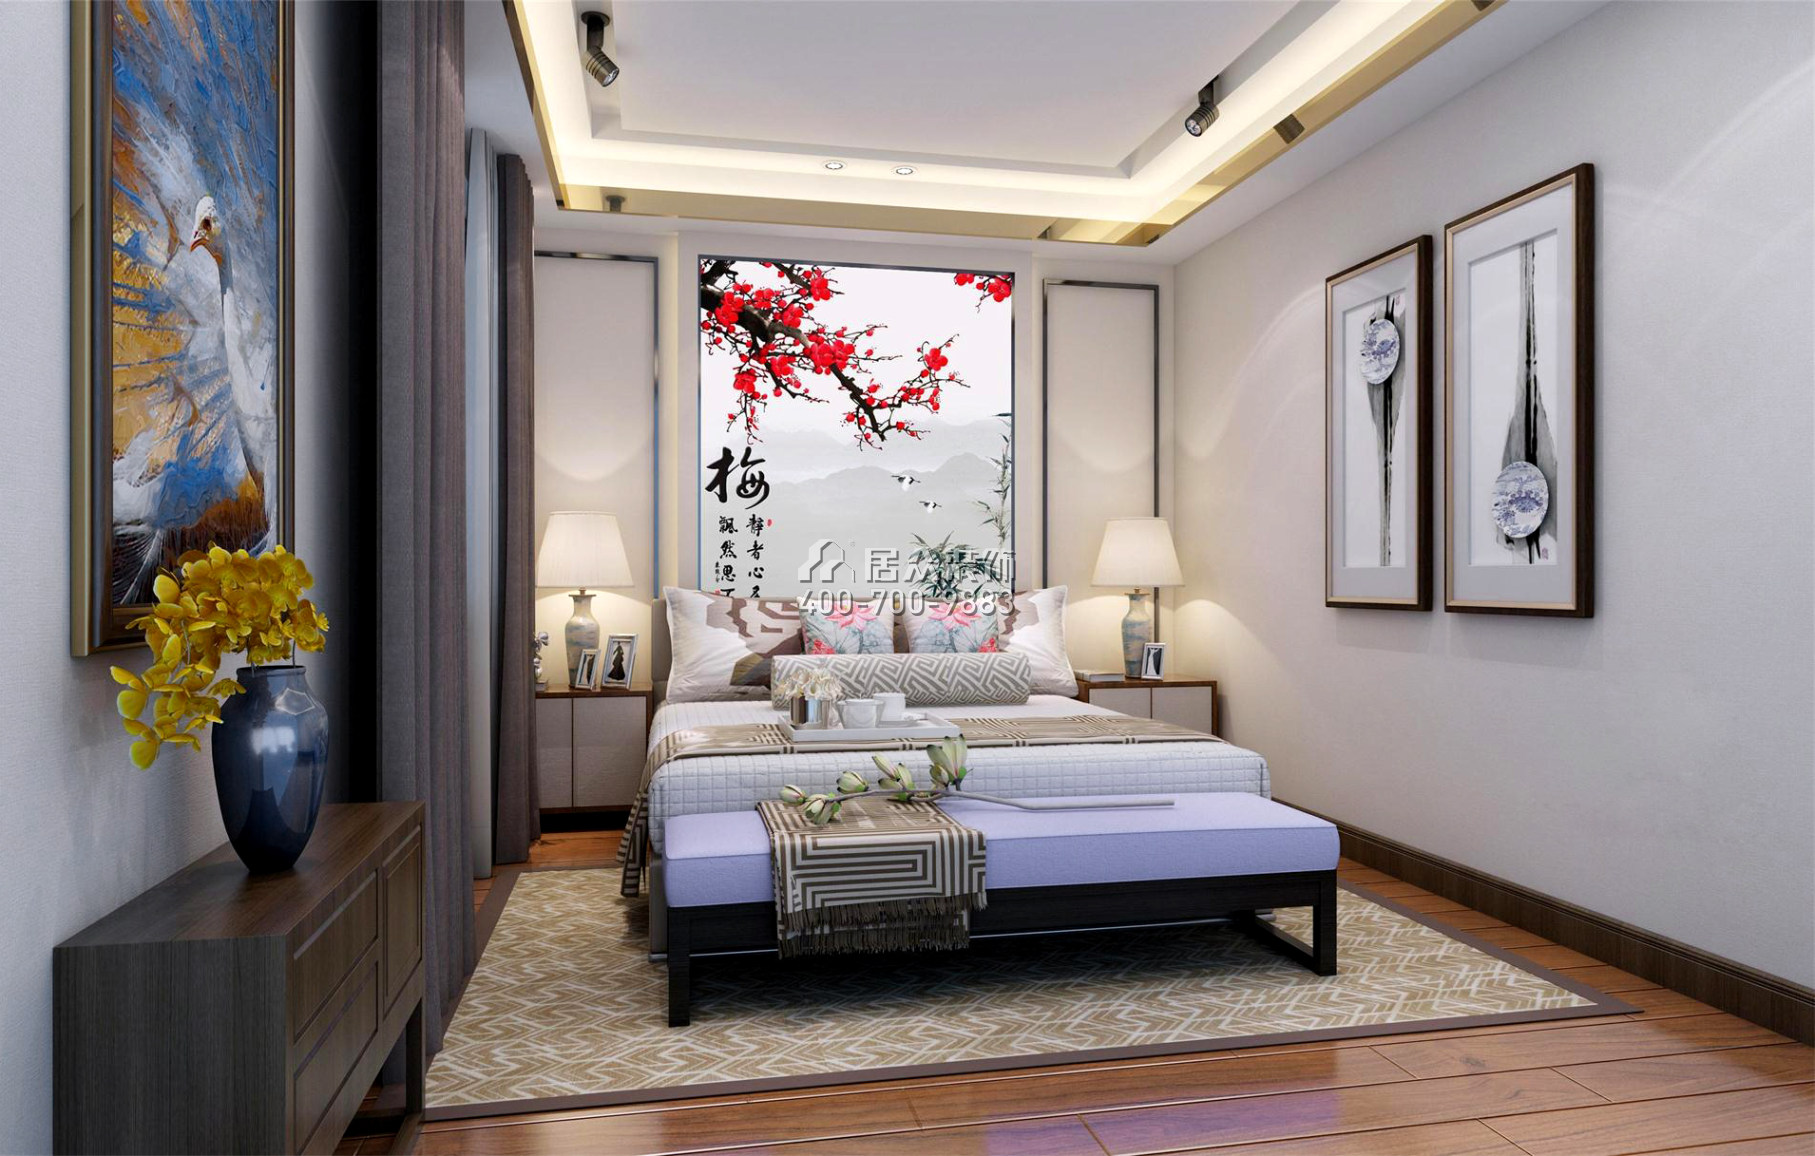 楓丹雅苑145平方米中式風格平層戶型臥室裝修效果圖